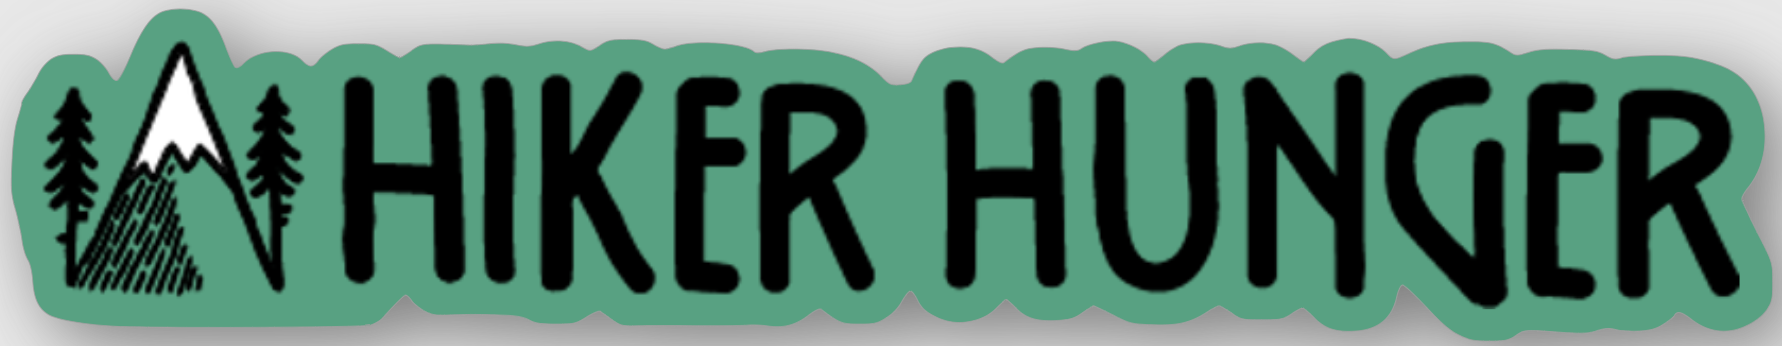 Hiker Hunger Sticker | Hiker Hunger Outfitters - Best Hiking Gear!